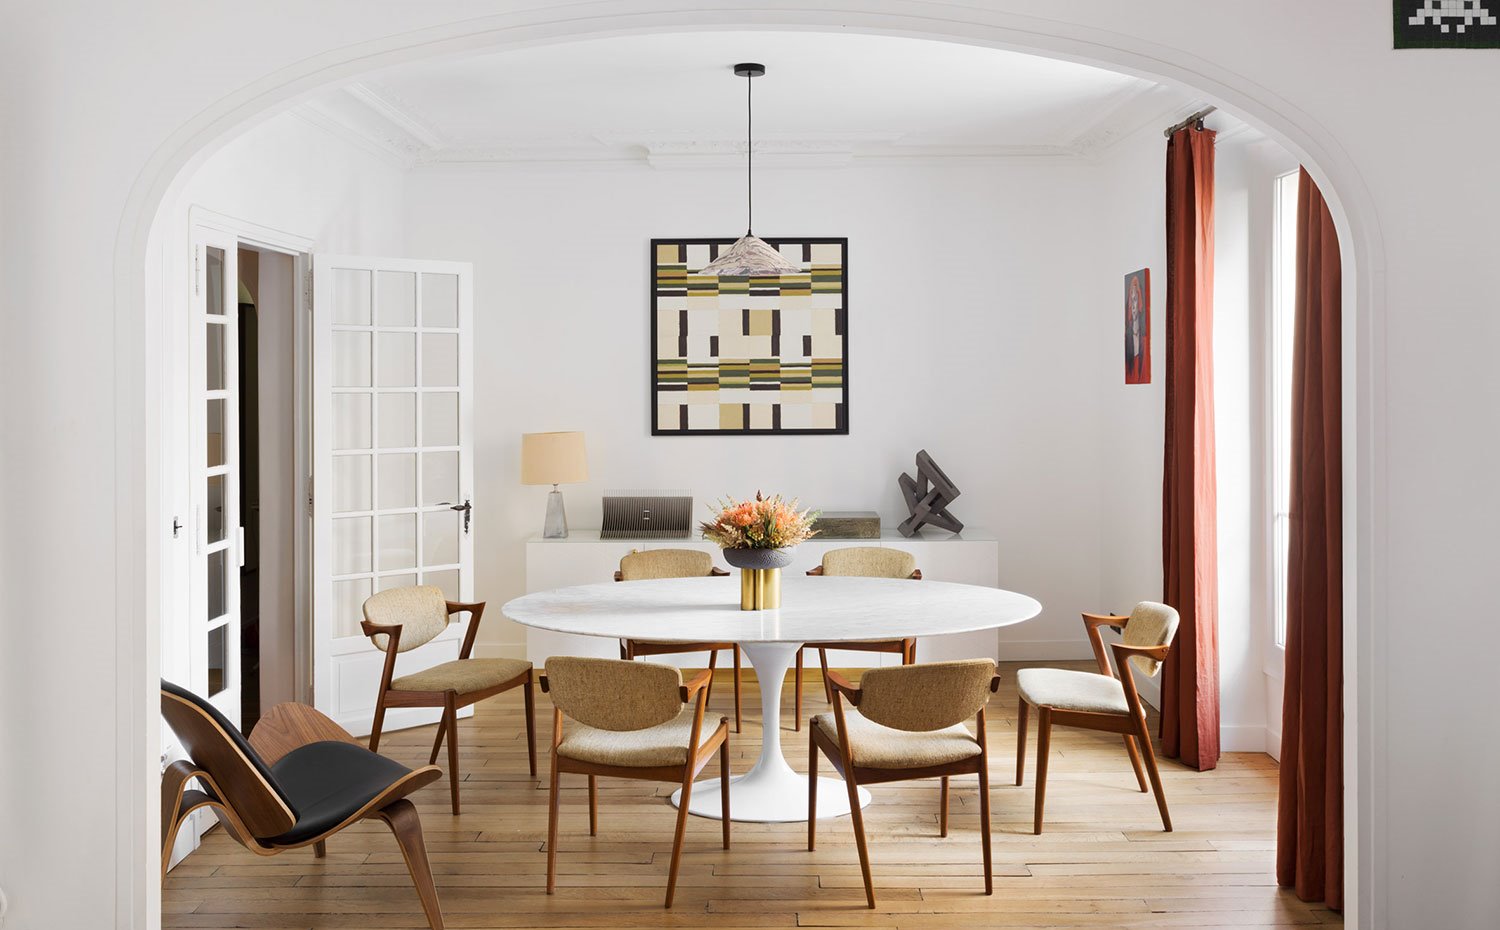 Comedor con mesa circular blanca, sillas tapizadas crudas con estructura de madera, aparador de madera